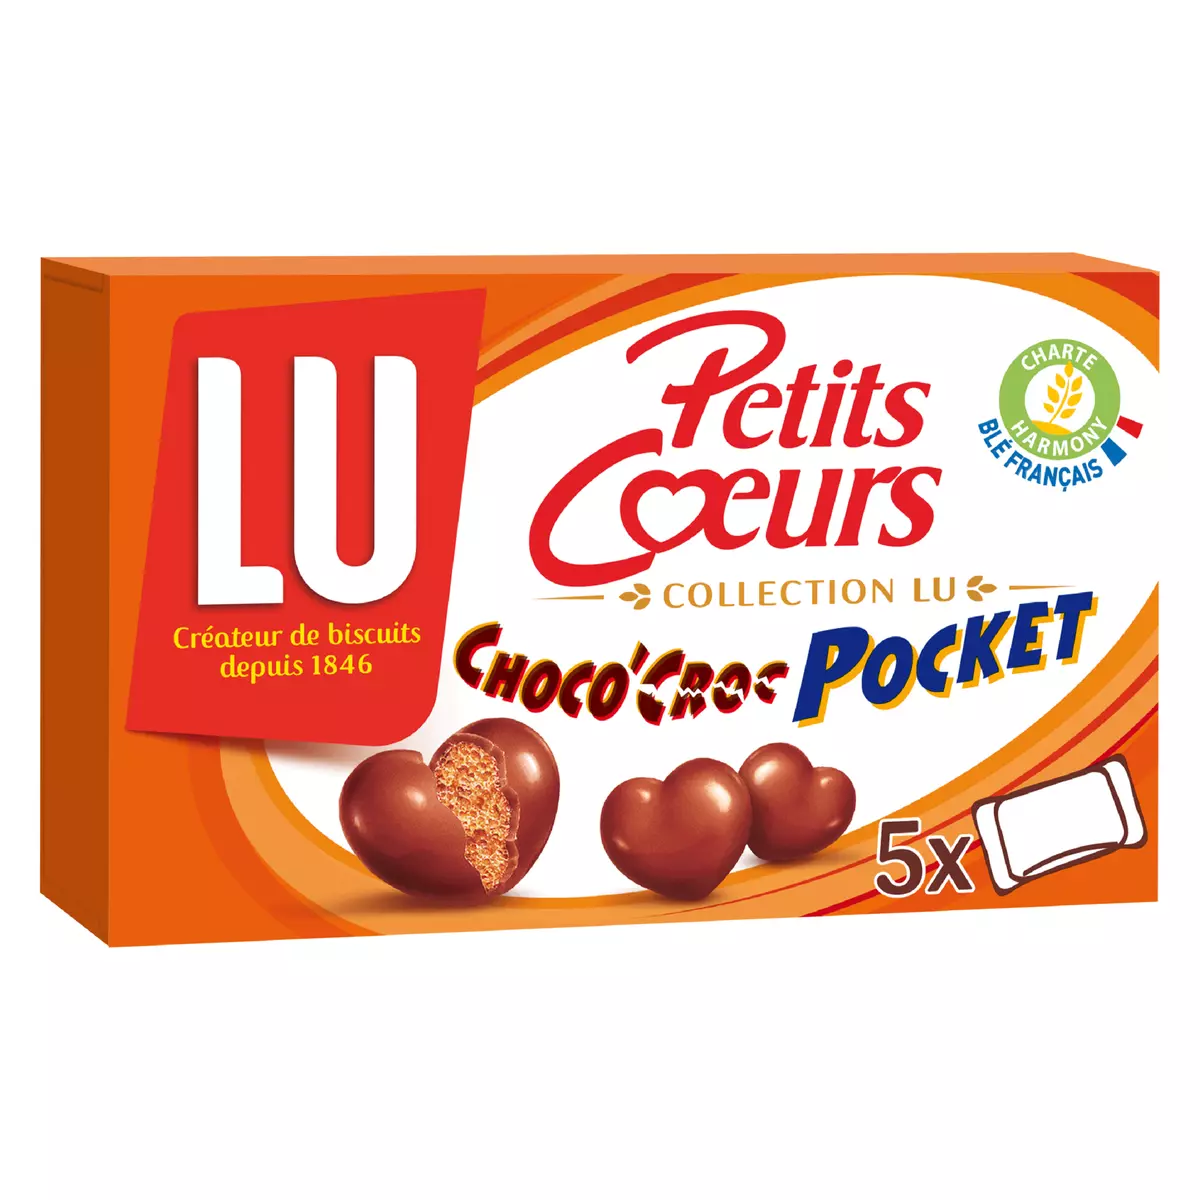 LU Petits cœurs choco'croc pocket biscuits enrobés de chocolat au lait, sachets individuels 5 sachets 180g